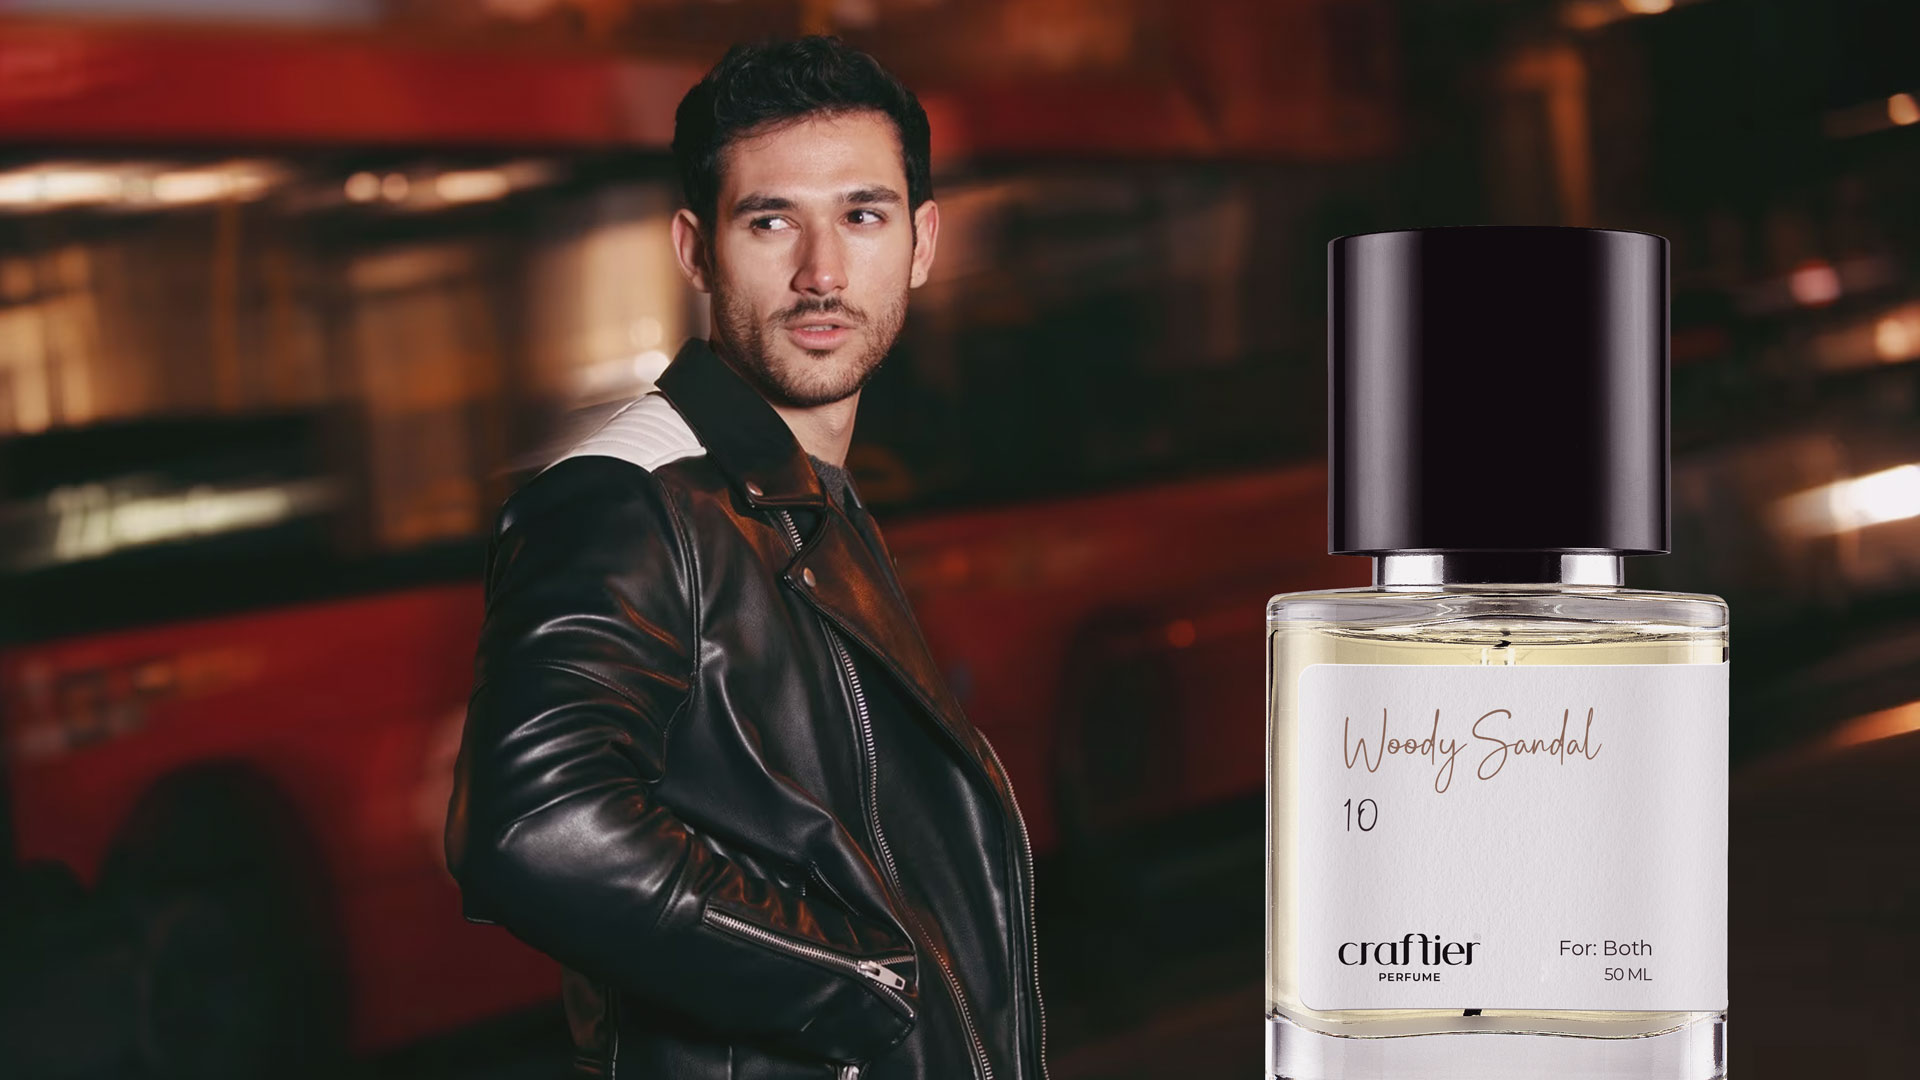 Armani Inspired Perfumes in Dubai, UAE | Clone of Giorgio Armani Fragrance